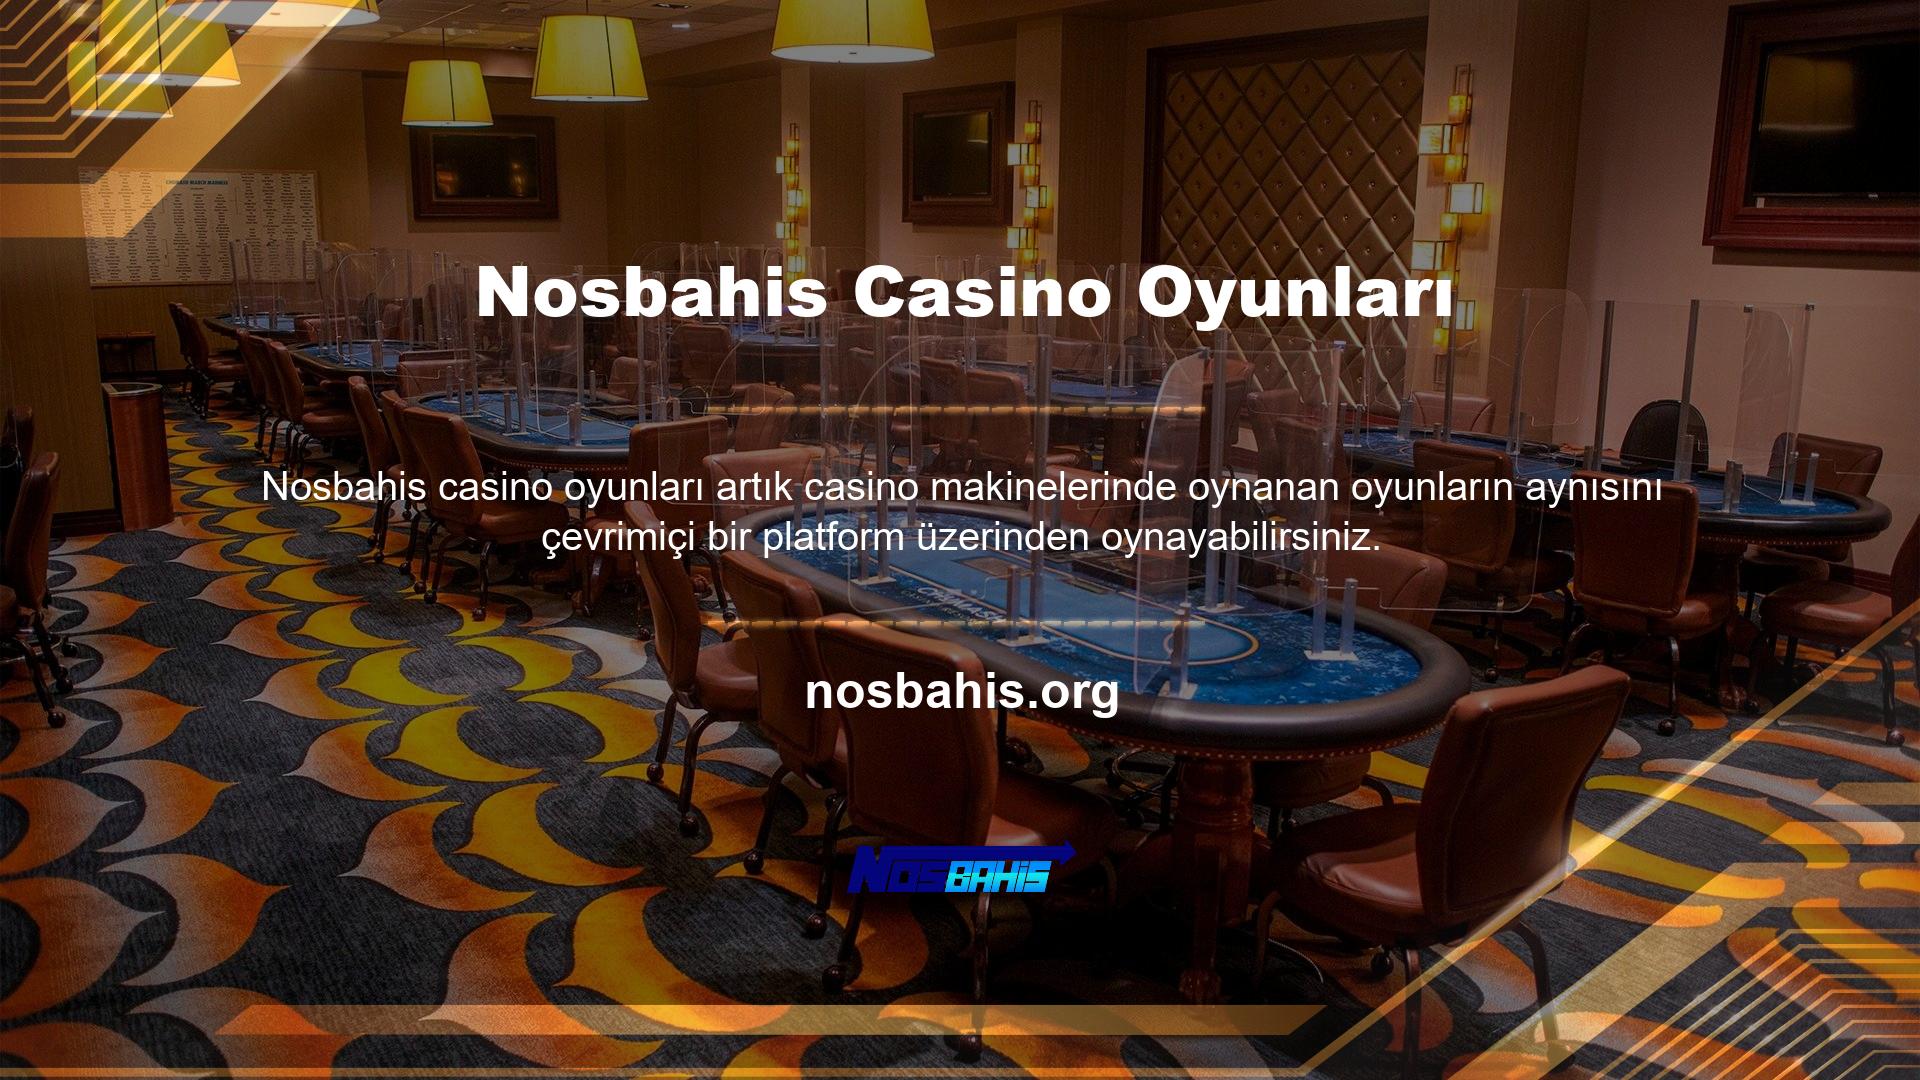 Nosbahis Casino Hizmeti ile tüm bu oyun çeşitlerini ücretsiz olarak test edebilirsiniz